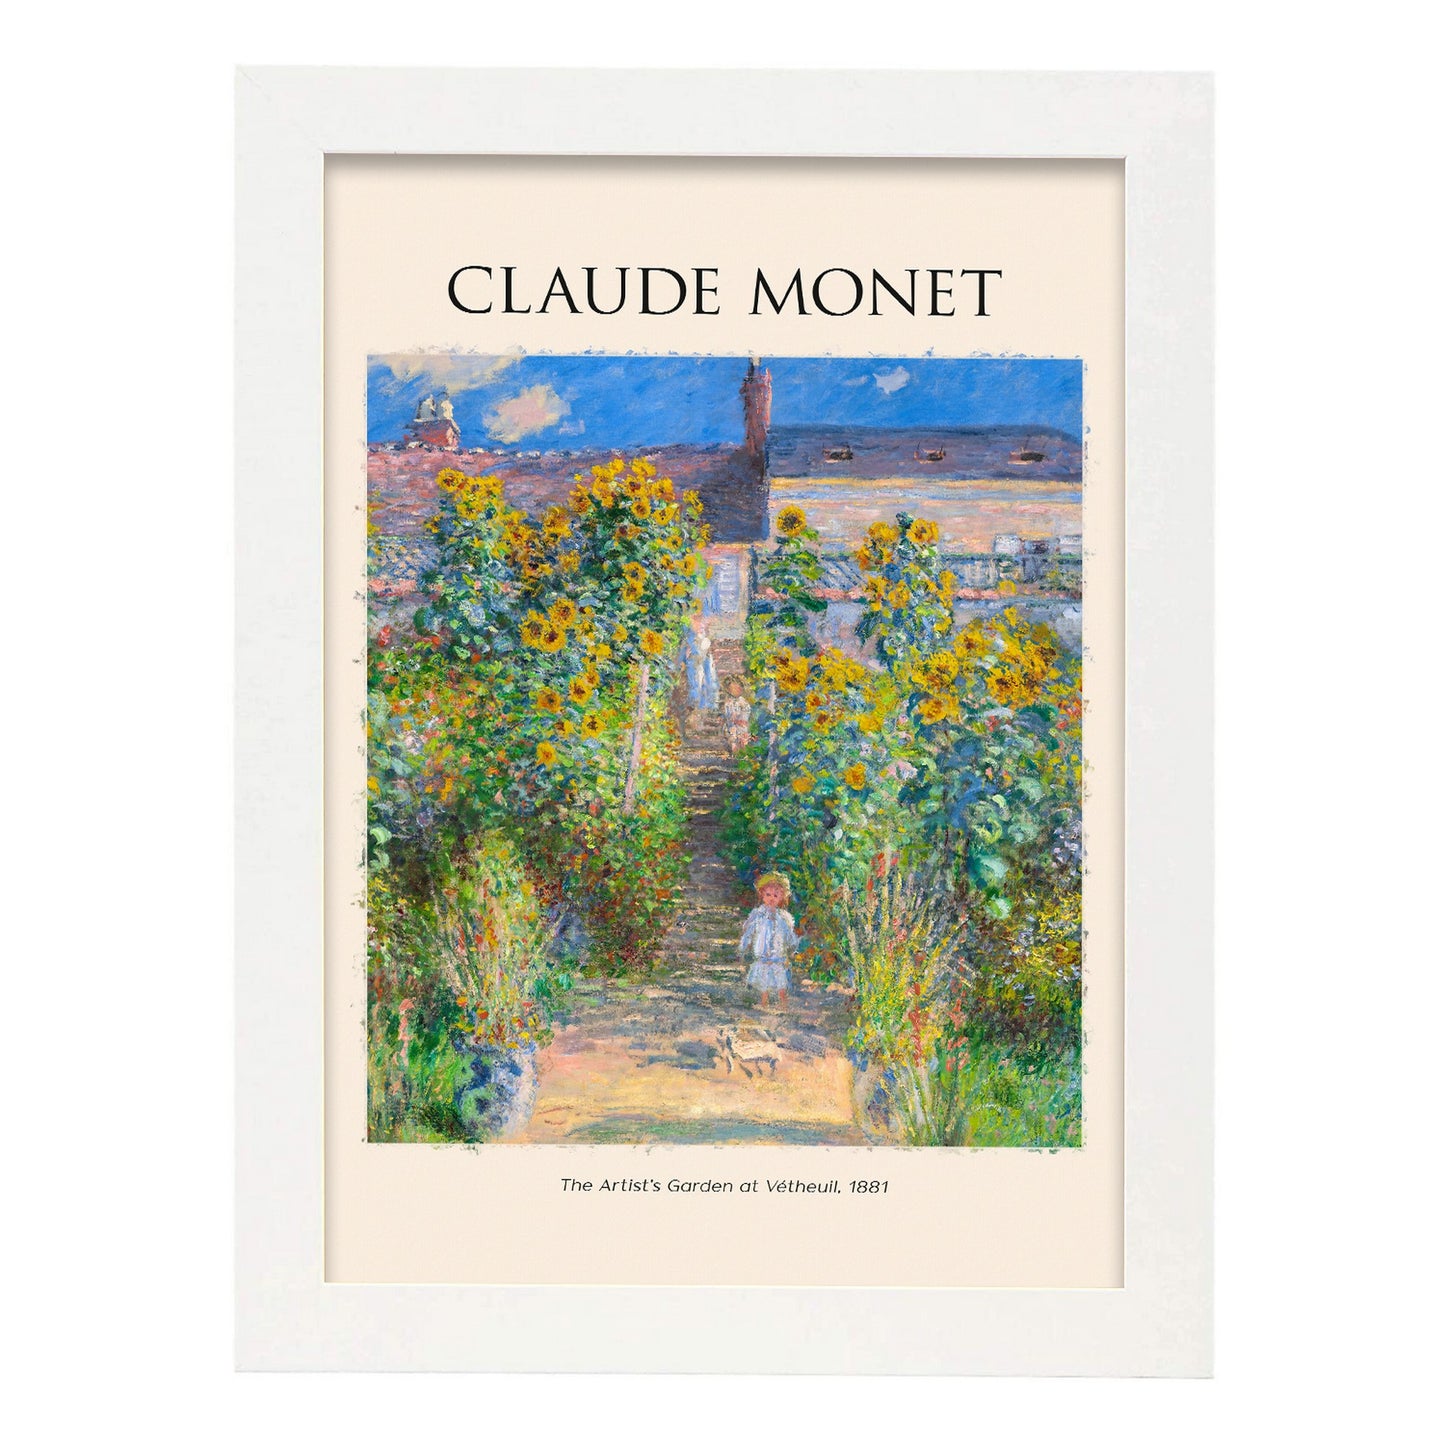 Lámina de Artists Garden en Vetheuil de Claude Monet